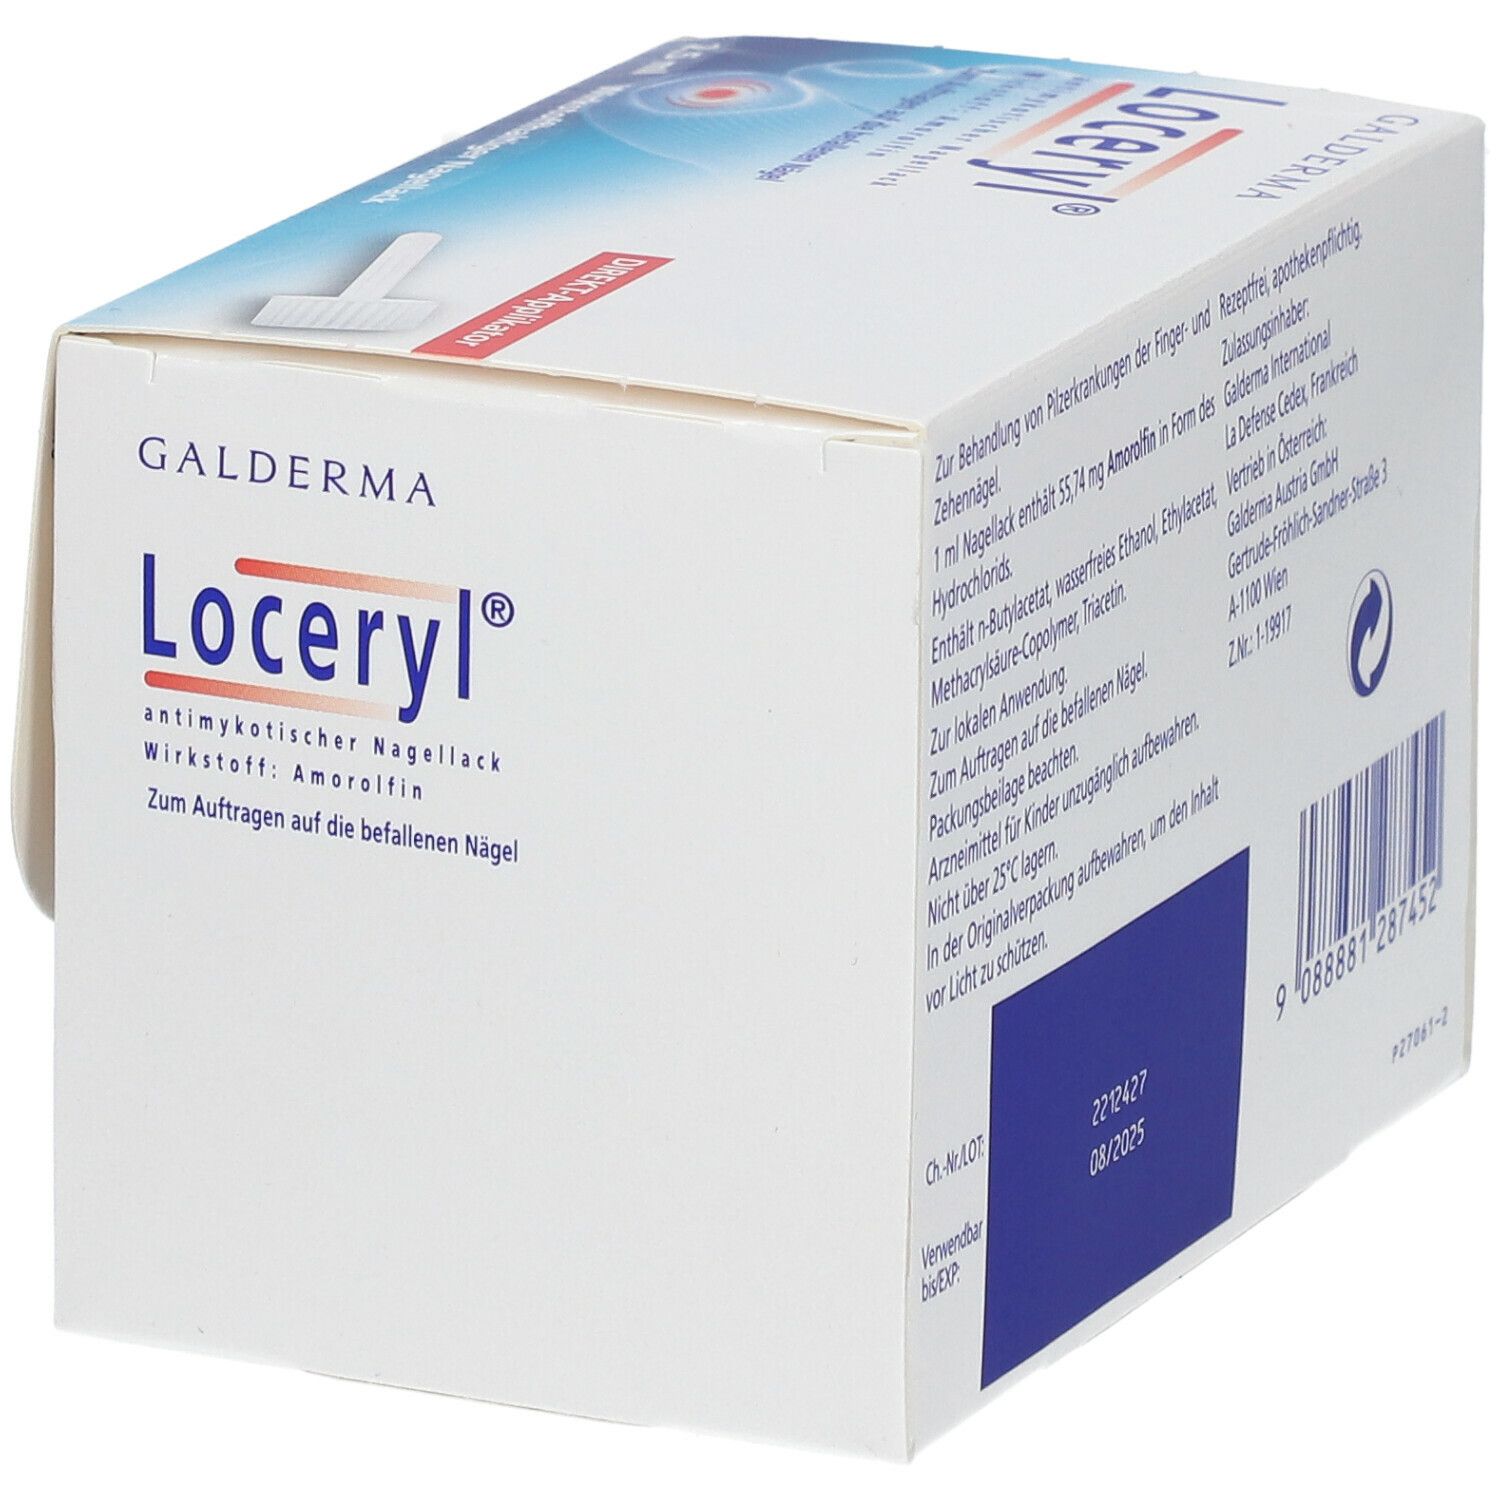 Loceryl® antimykotischer Nagellack